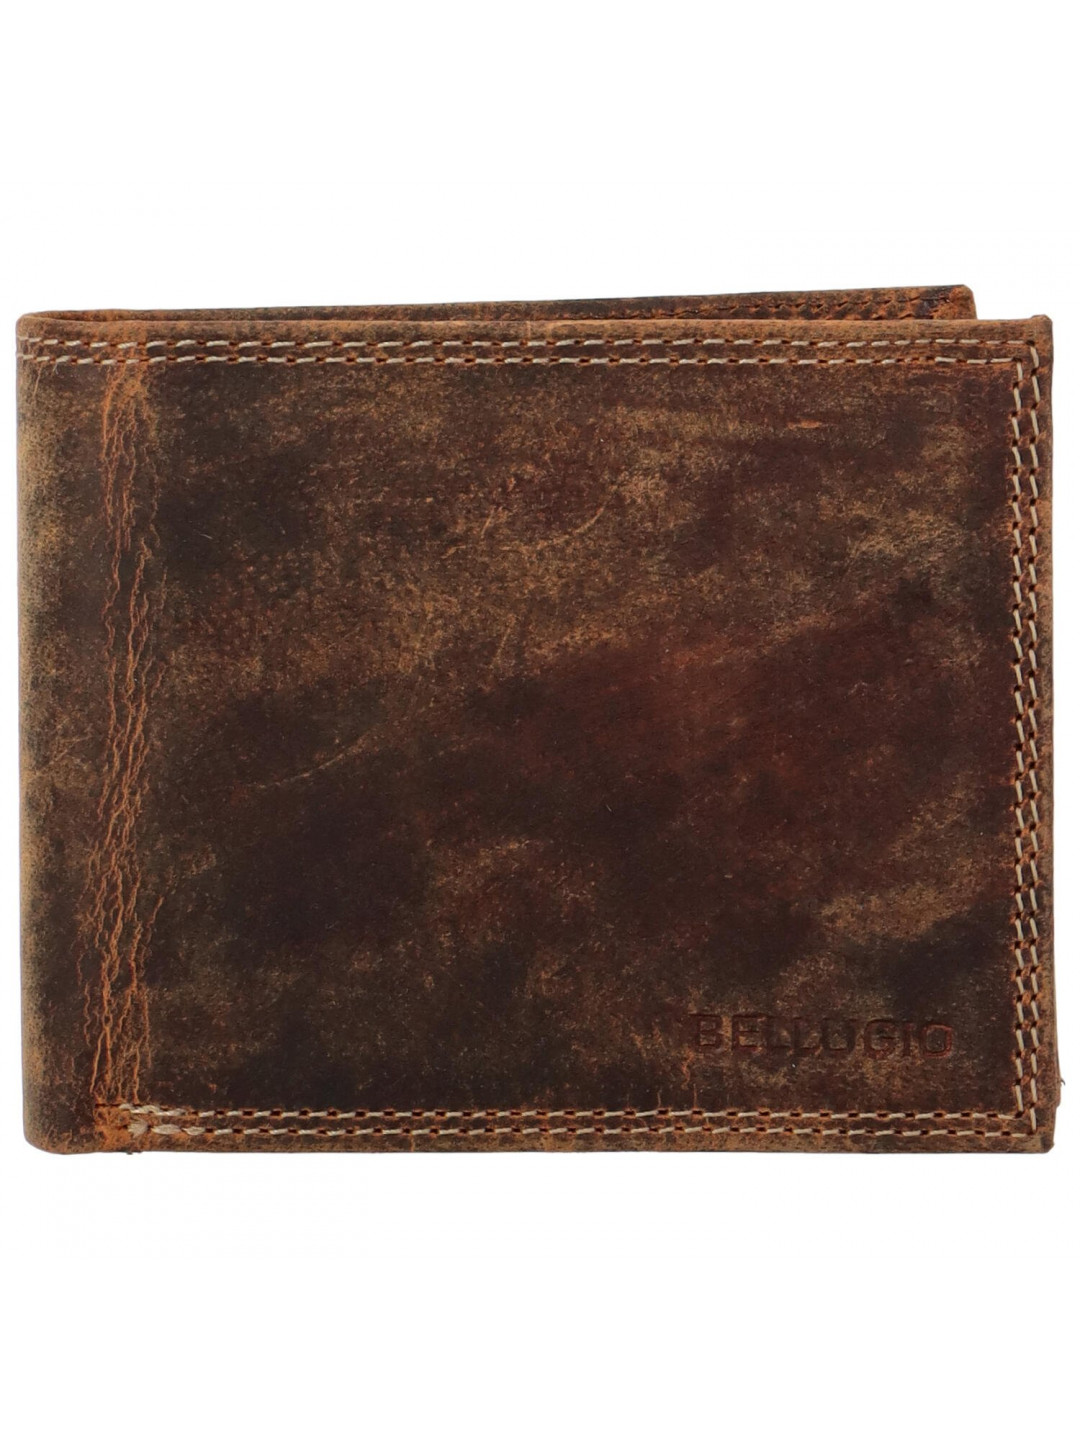 Pánská kožená peněženka tmavě hnědá – Bellugio Massay